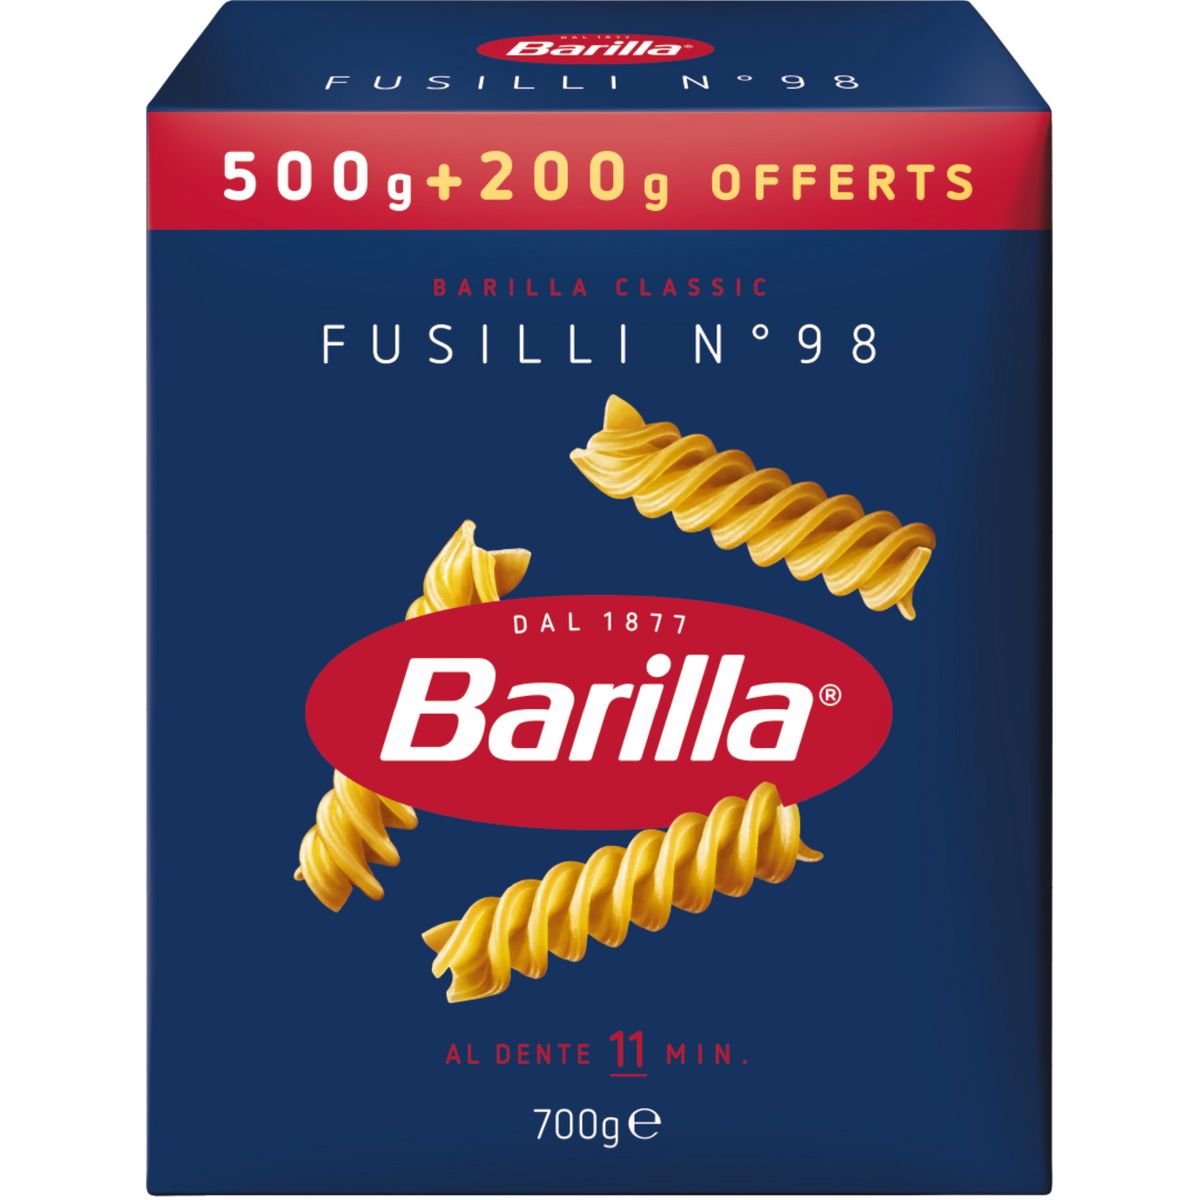 BARILLA Fusilli N°98 500g+200g offert pas cher - Auchan.fr